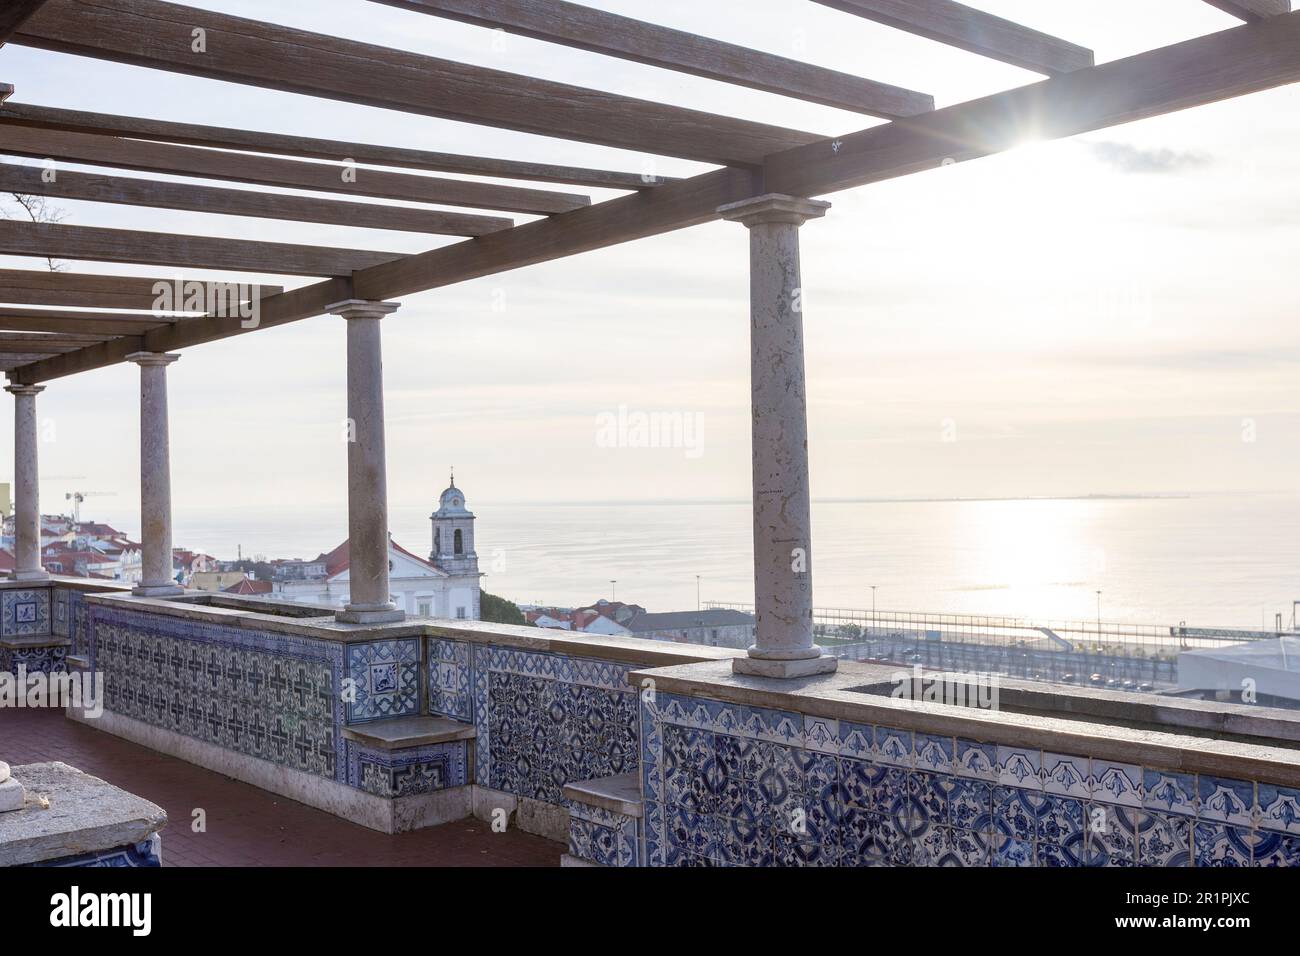 Miradouro de Santa Luzia, eine Aussichtsplattform mit Pergola, die einen dramatischen Blick auf Lissabon und den Tejo bietet Stockfoto